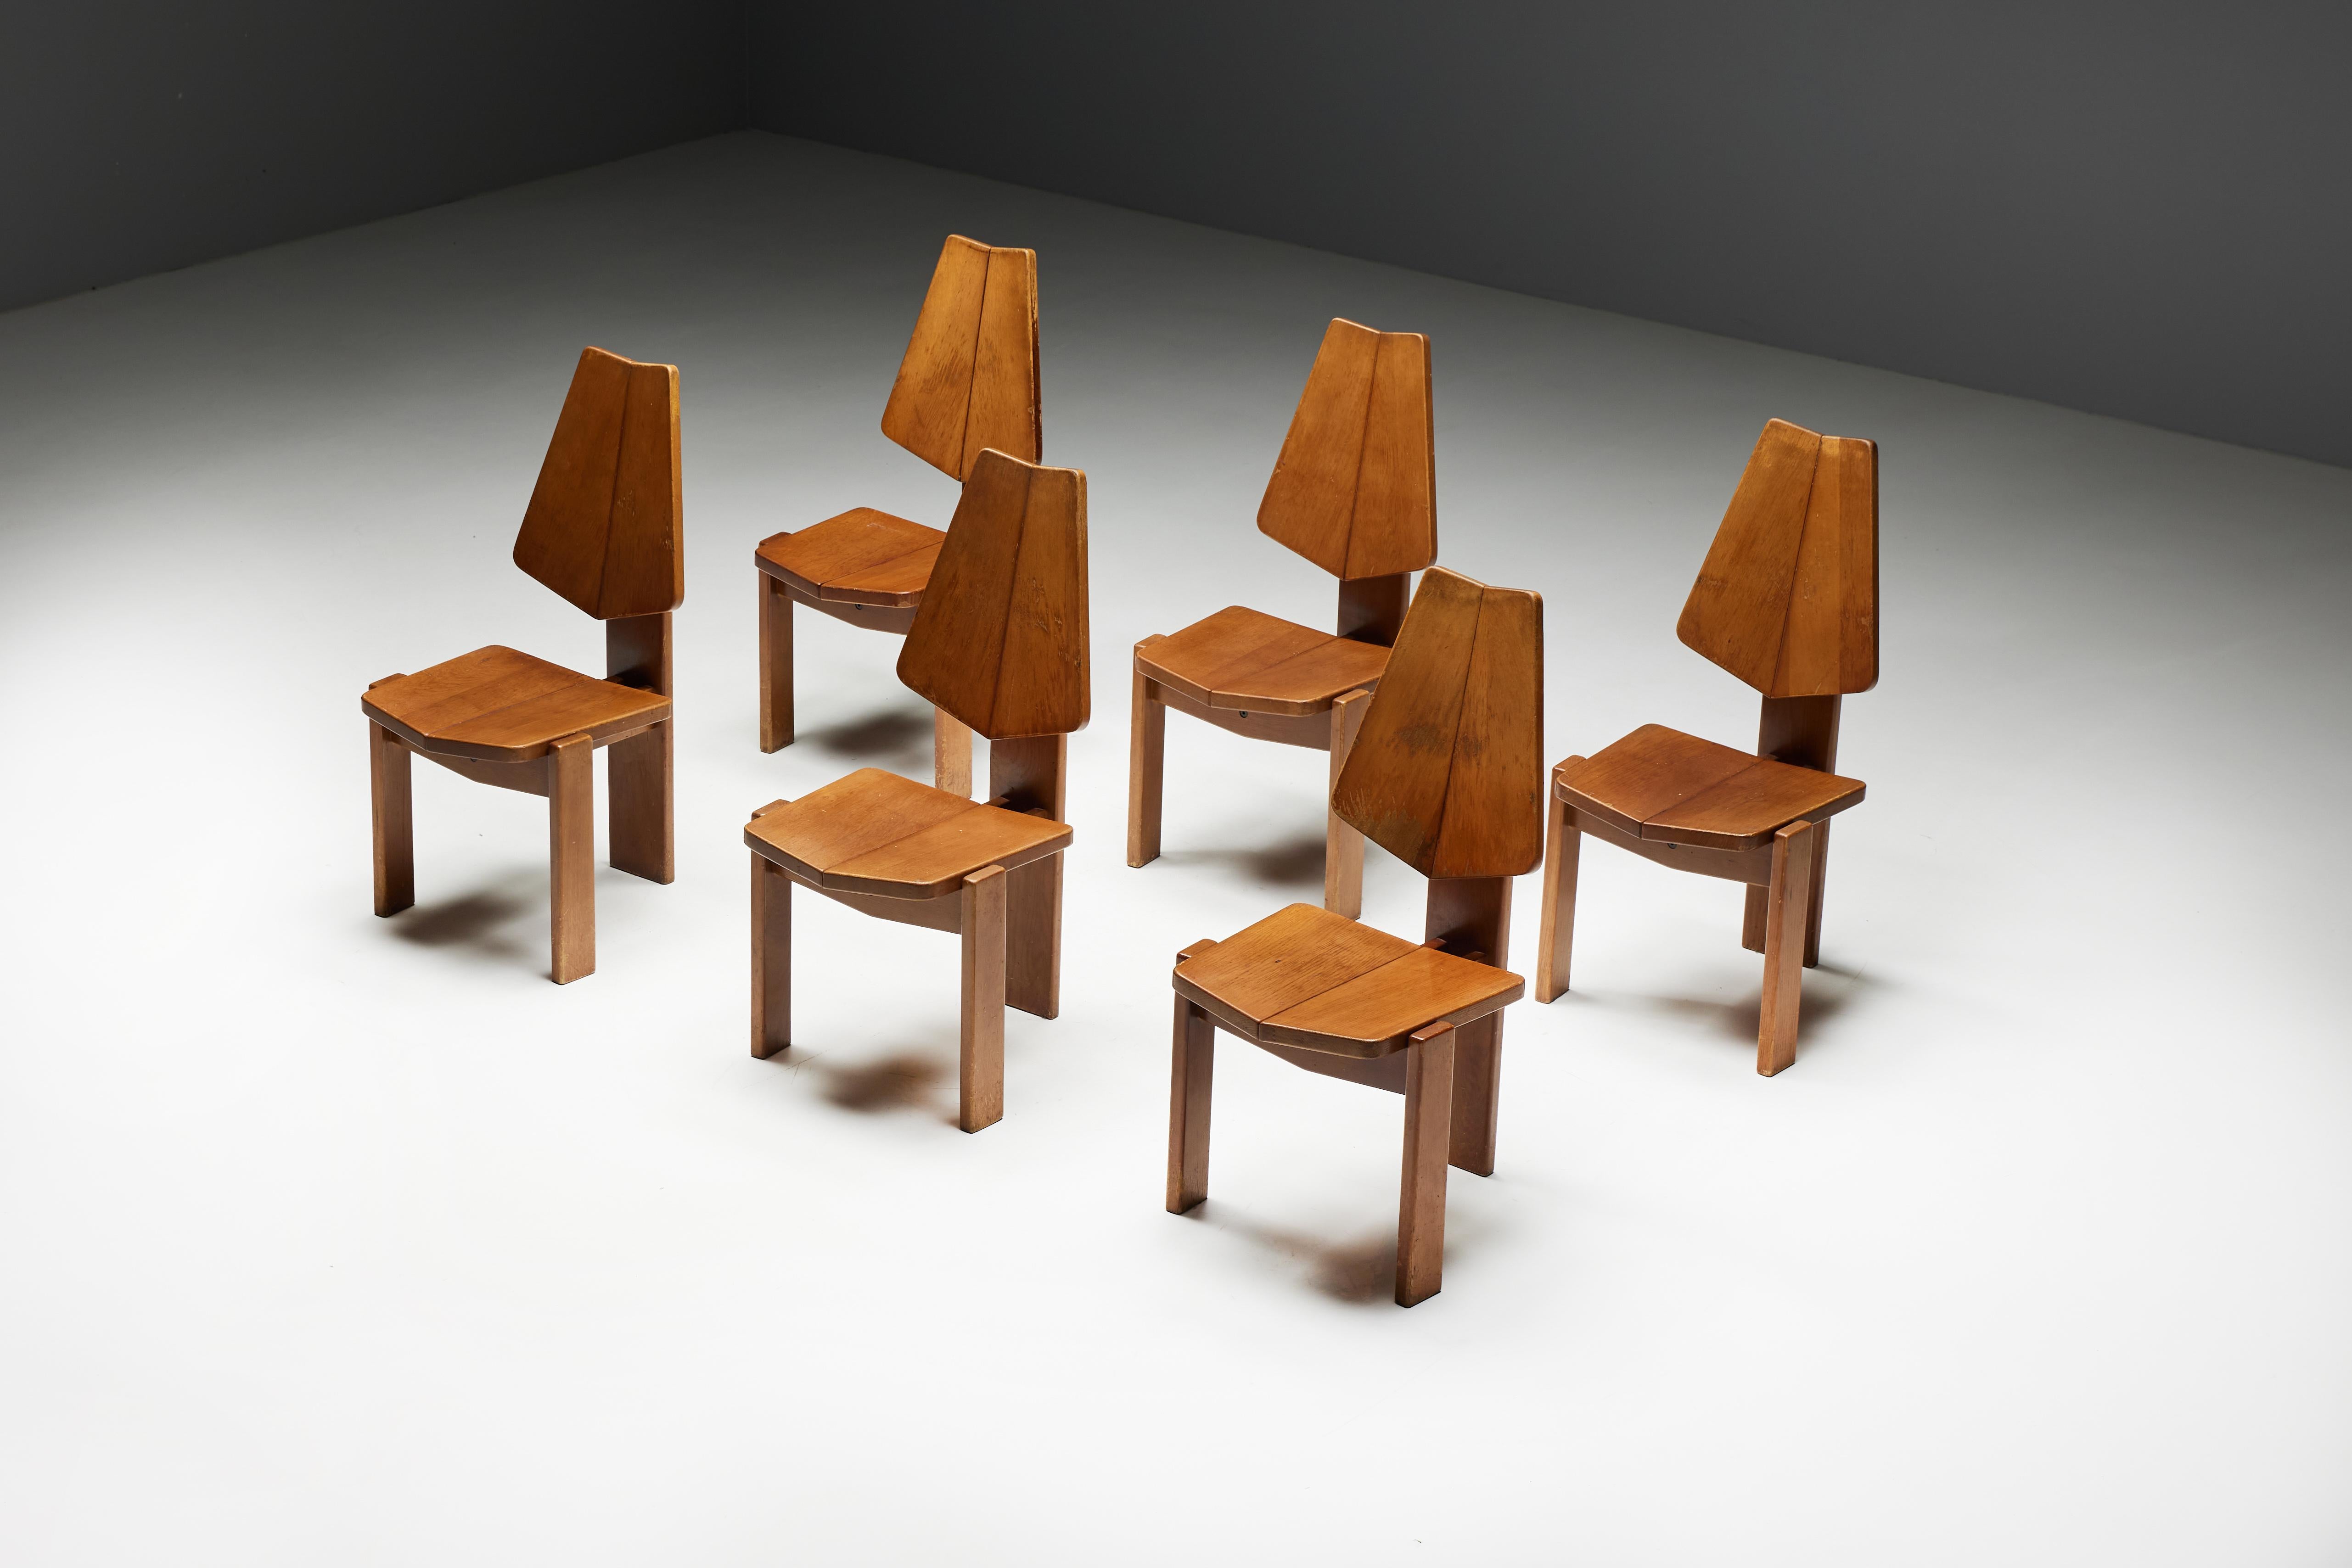 Chaises de salle à manger brutalistes, un mélange fascinant d'élégance sculpturale et de charme robuste. Fabriquées en bois massif riche, ces chaises incarnent le design brut et expressif des années 1970. Le dossier haut offre non seulement un